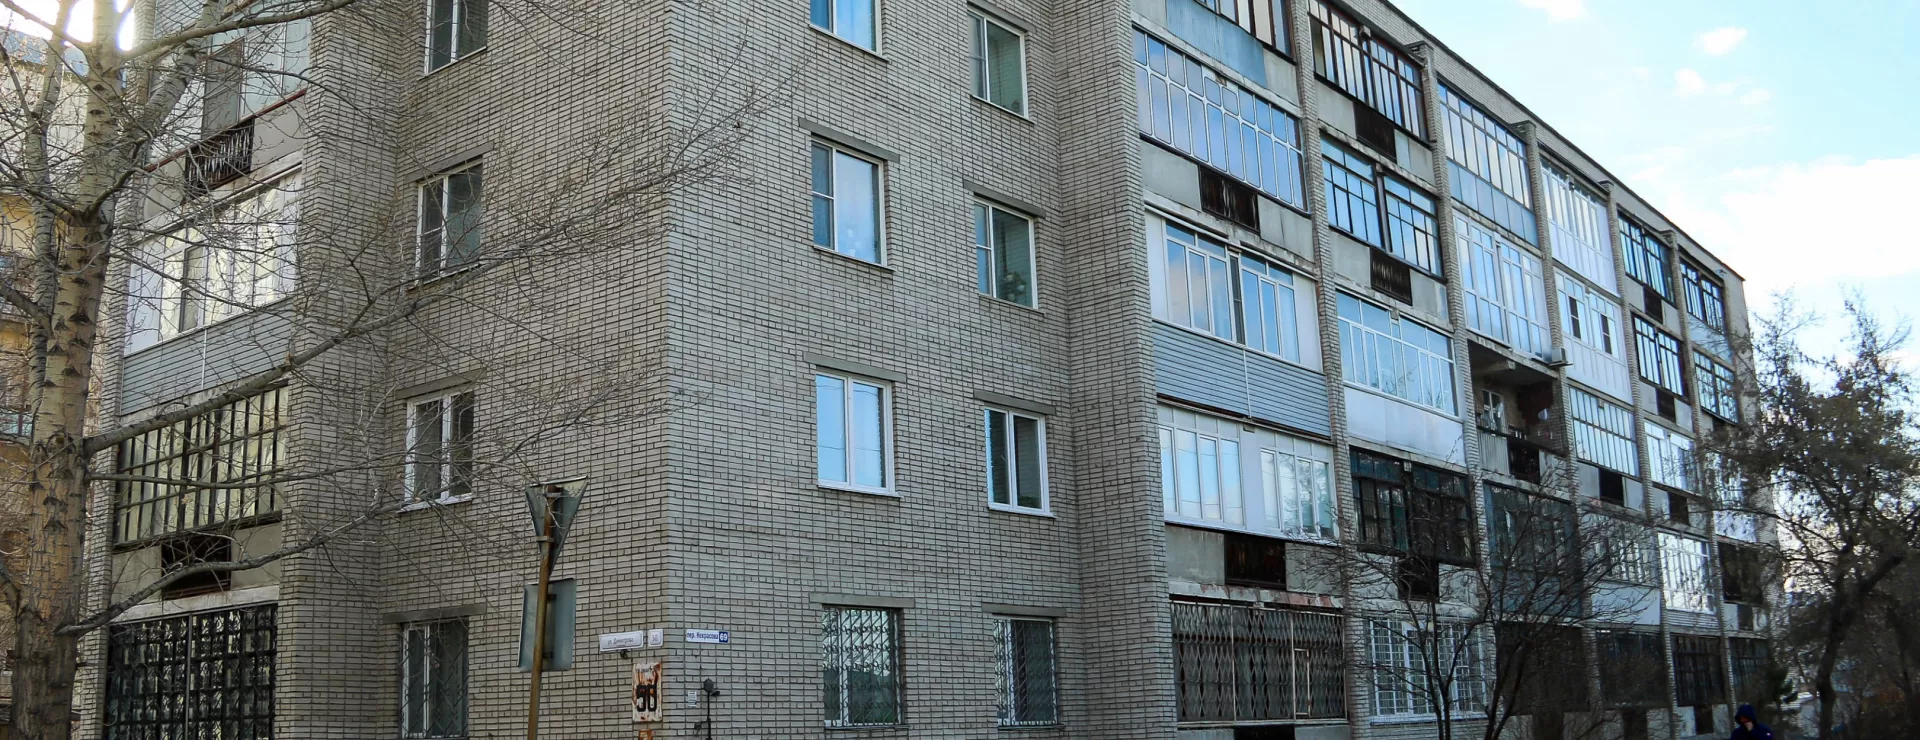 Жители пятиэтажки в центре Барнаула несколько лет не могут добиться капремонта кровли